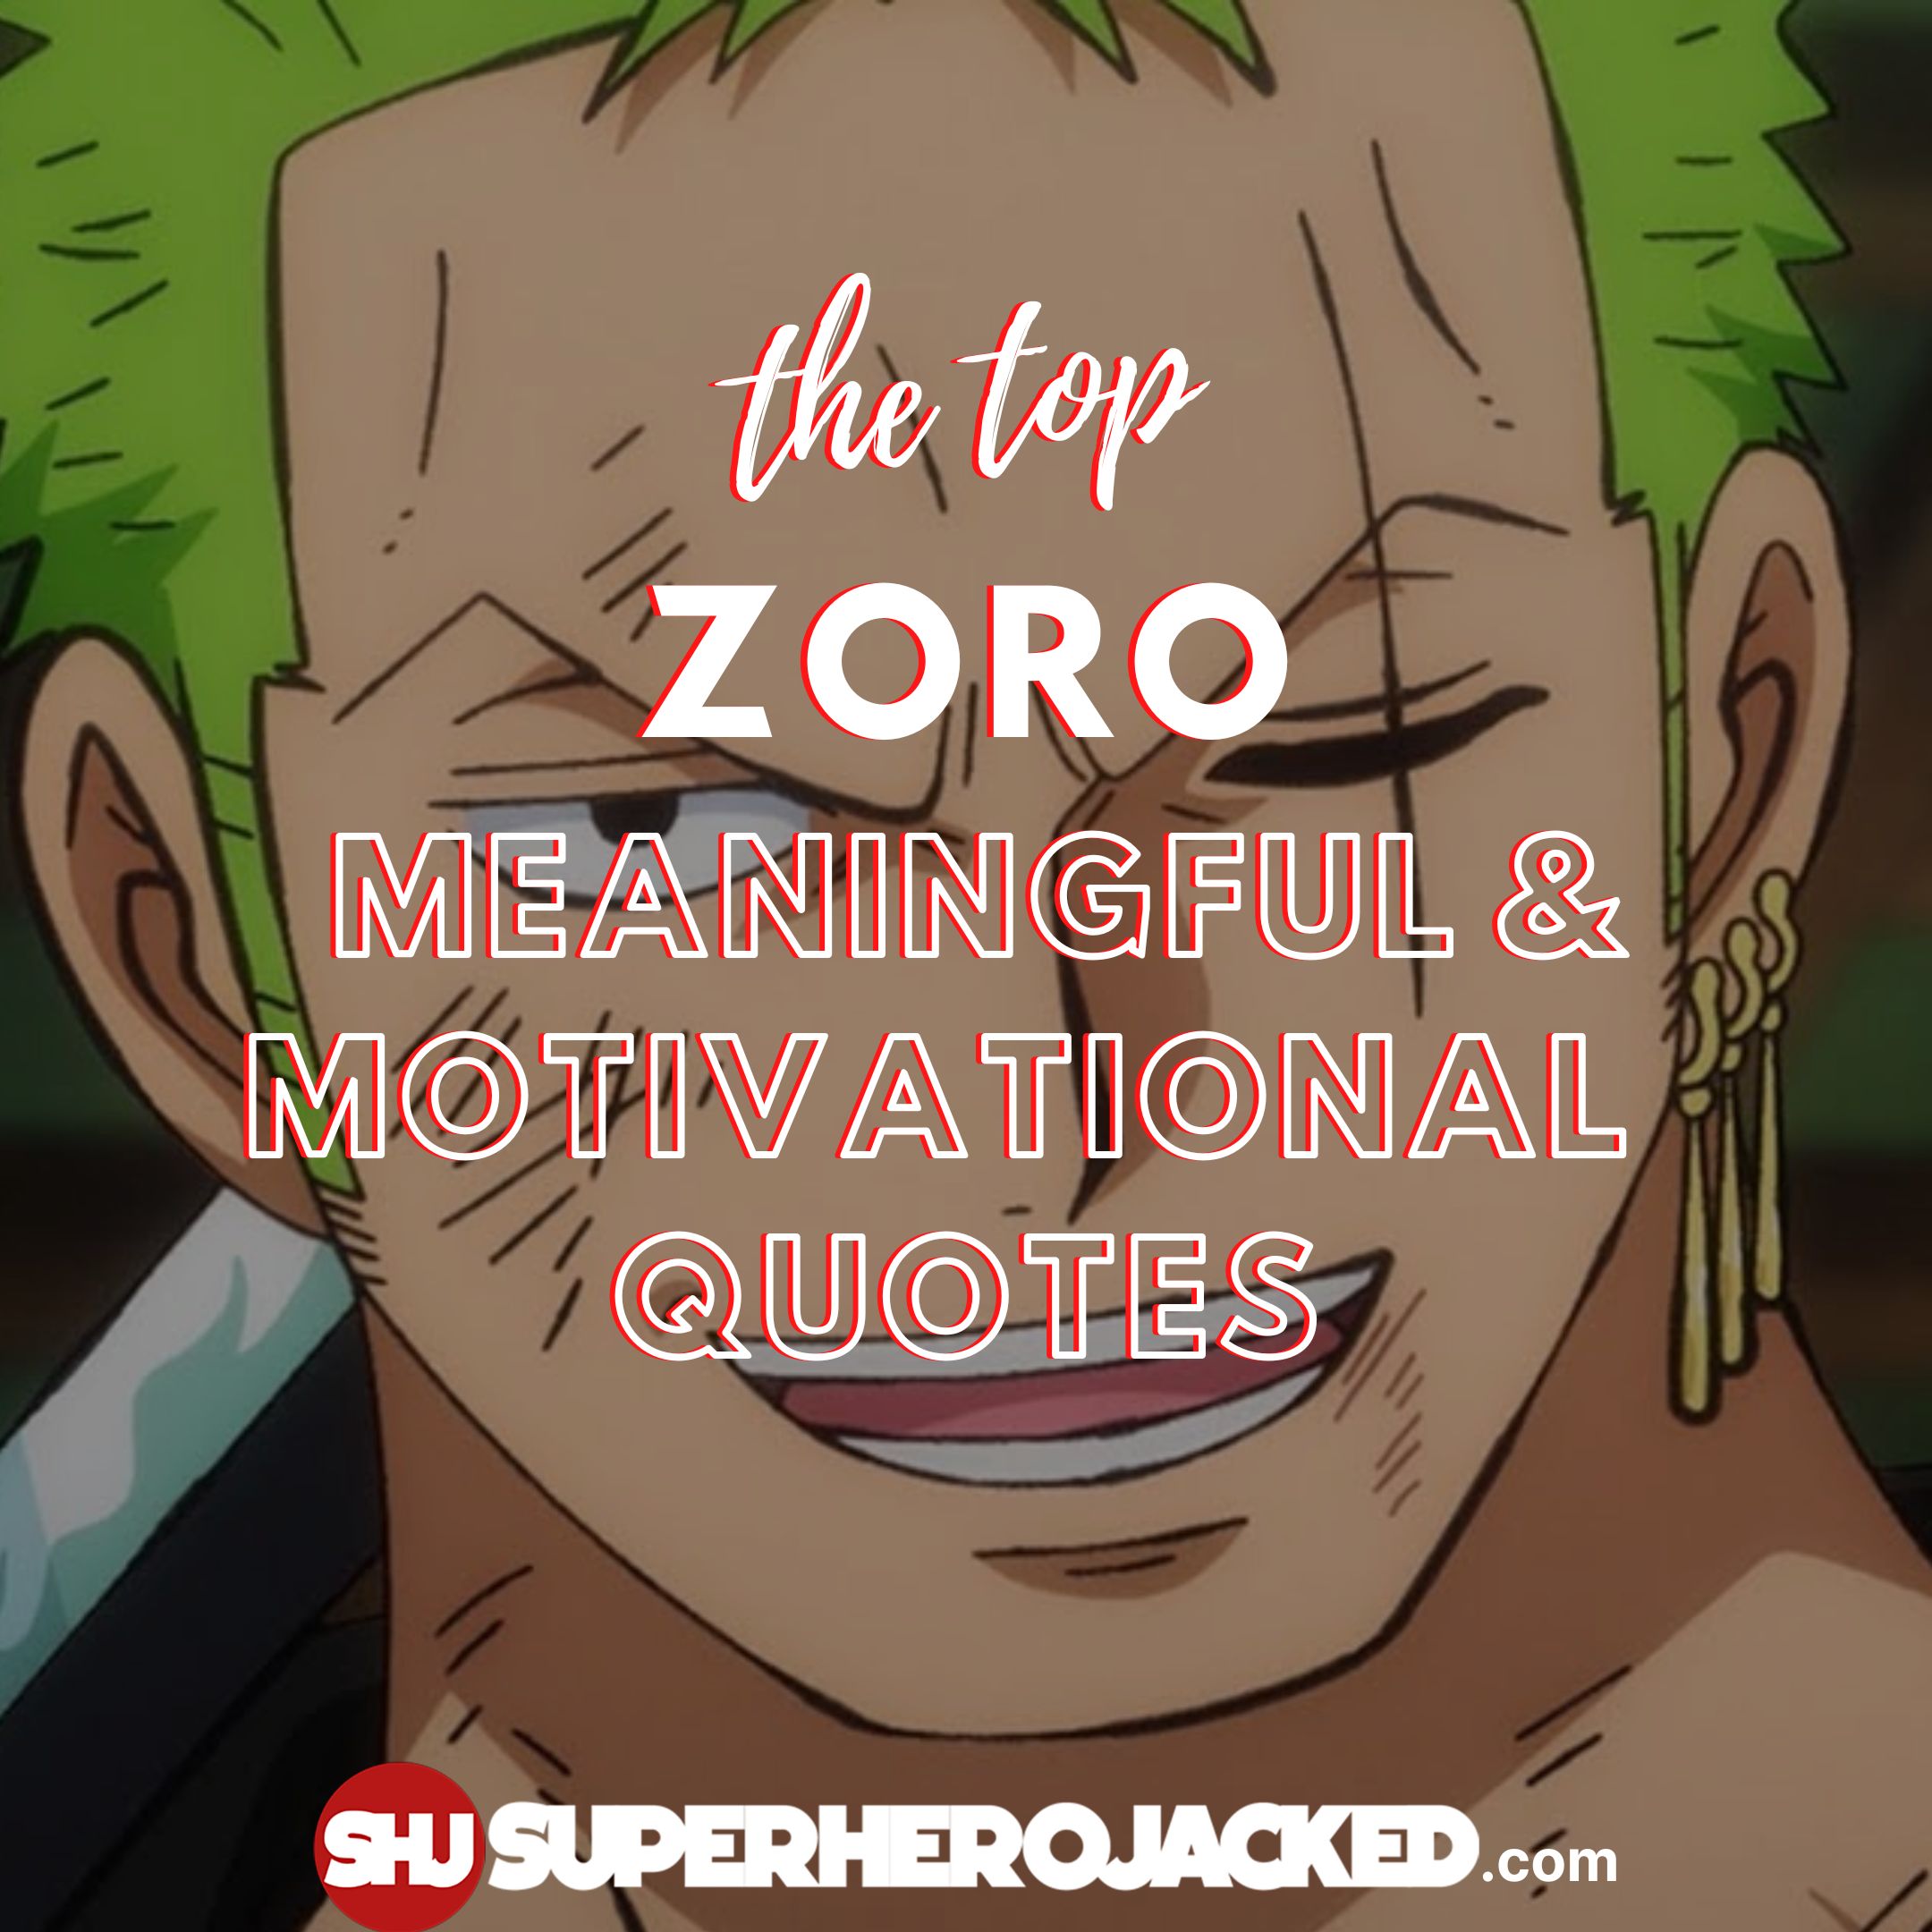 Top Ten Zoro Quotes: The Best Roronoa Zoro Motivational Quotes